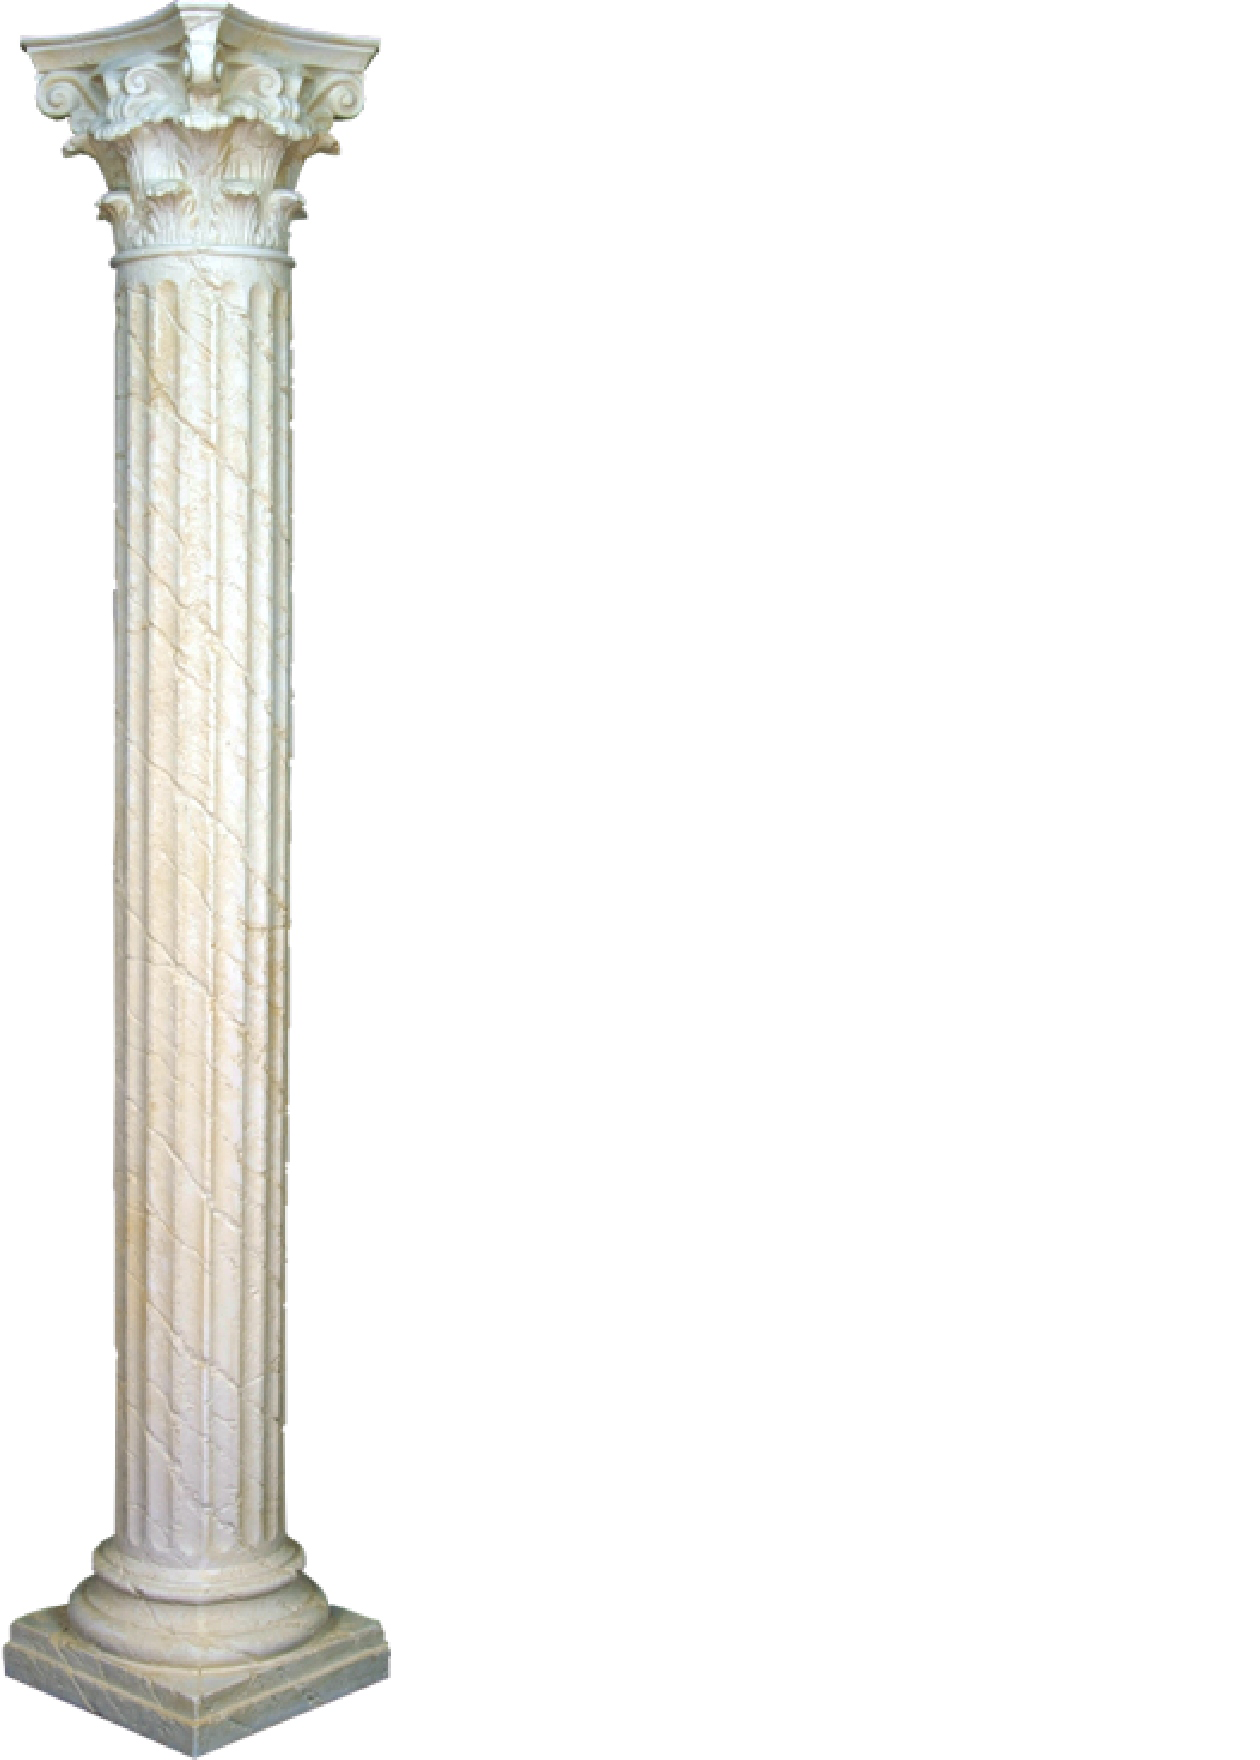 XXL Griechische Säule Antik Stil Design Säulen Luxus Stützen Neu 224cm